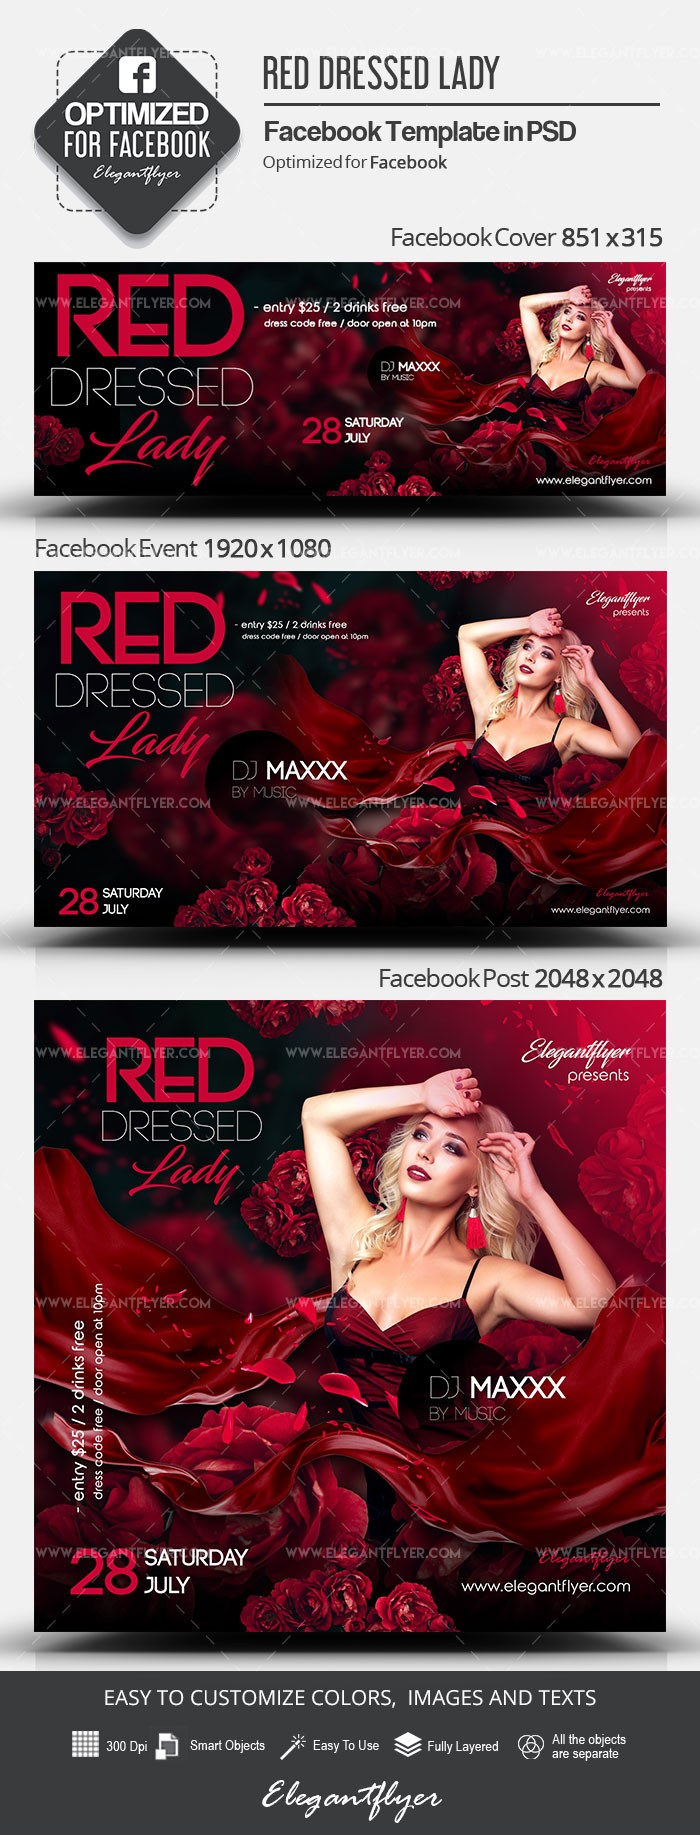 Red Dressed Lady Facebook by ElegantFlyer